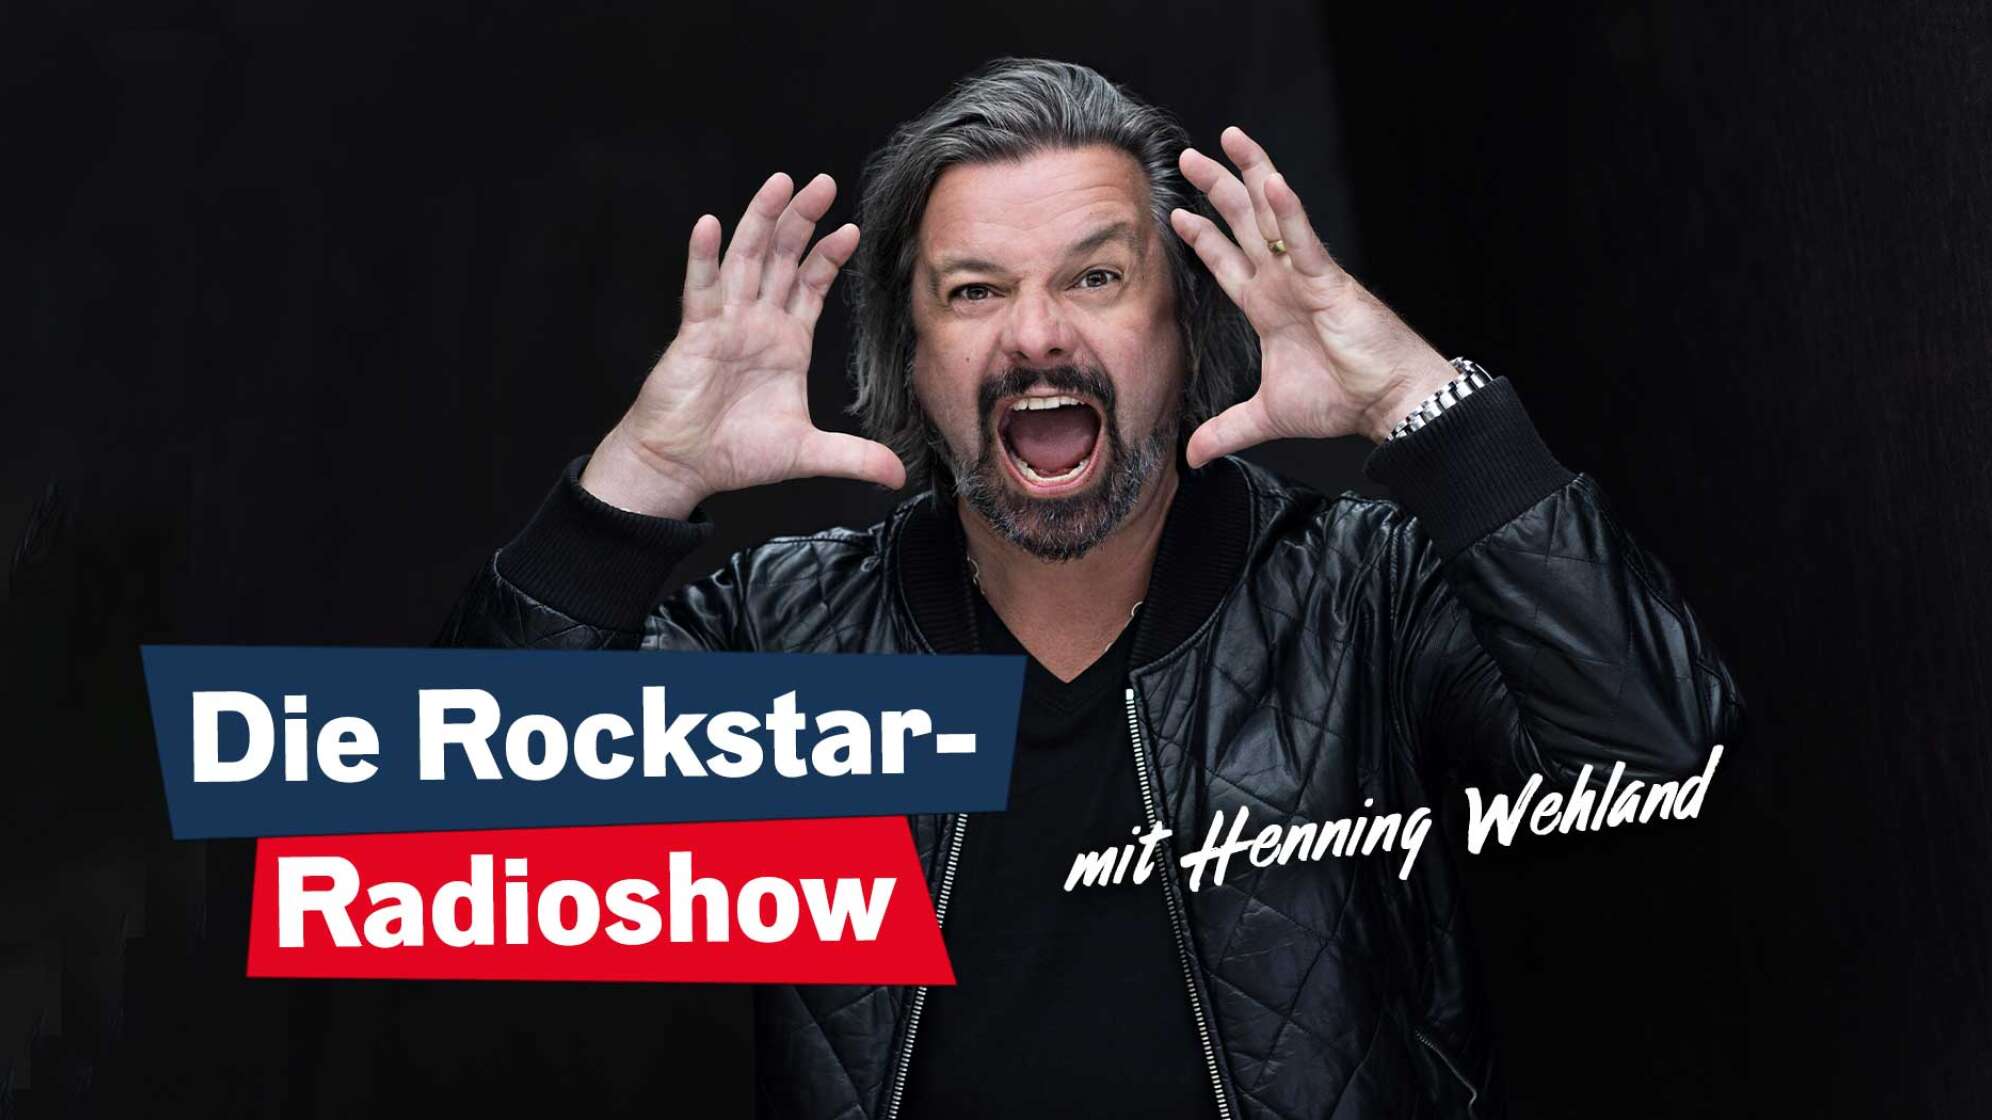 Die Rockstar-Radioshow mit Henning Wehland